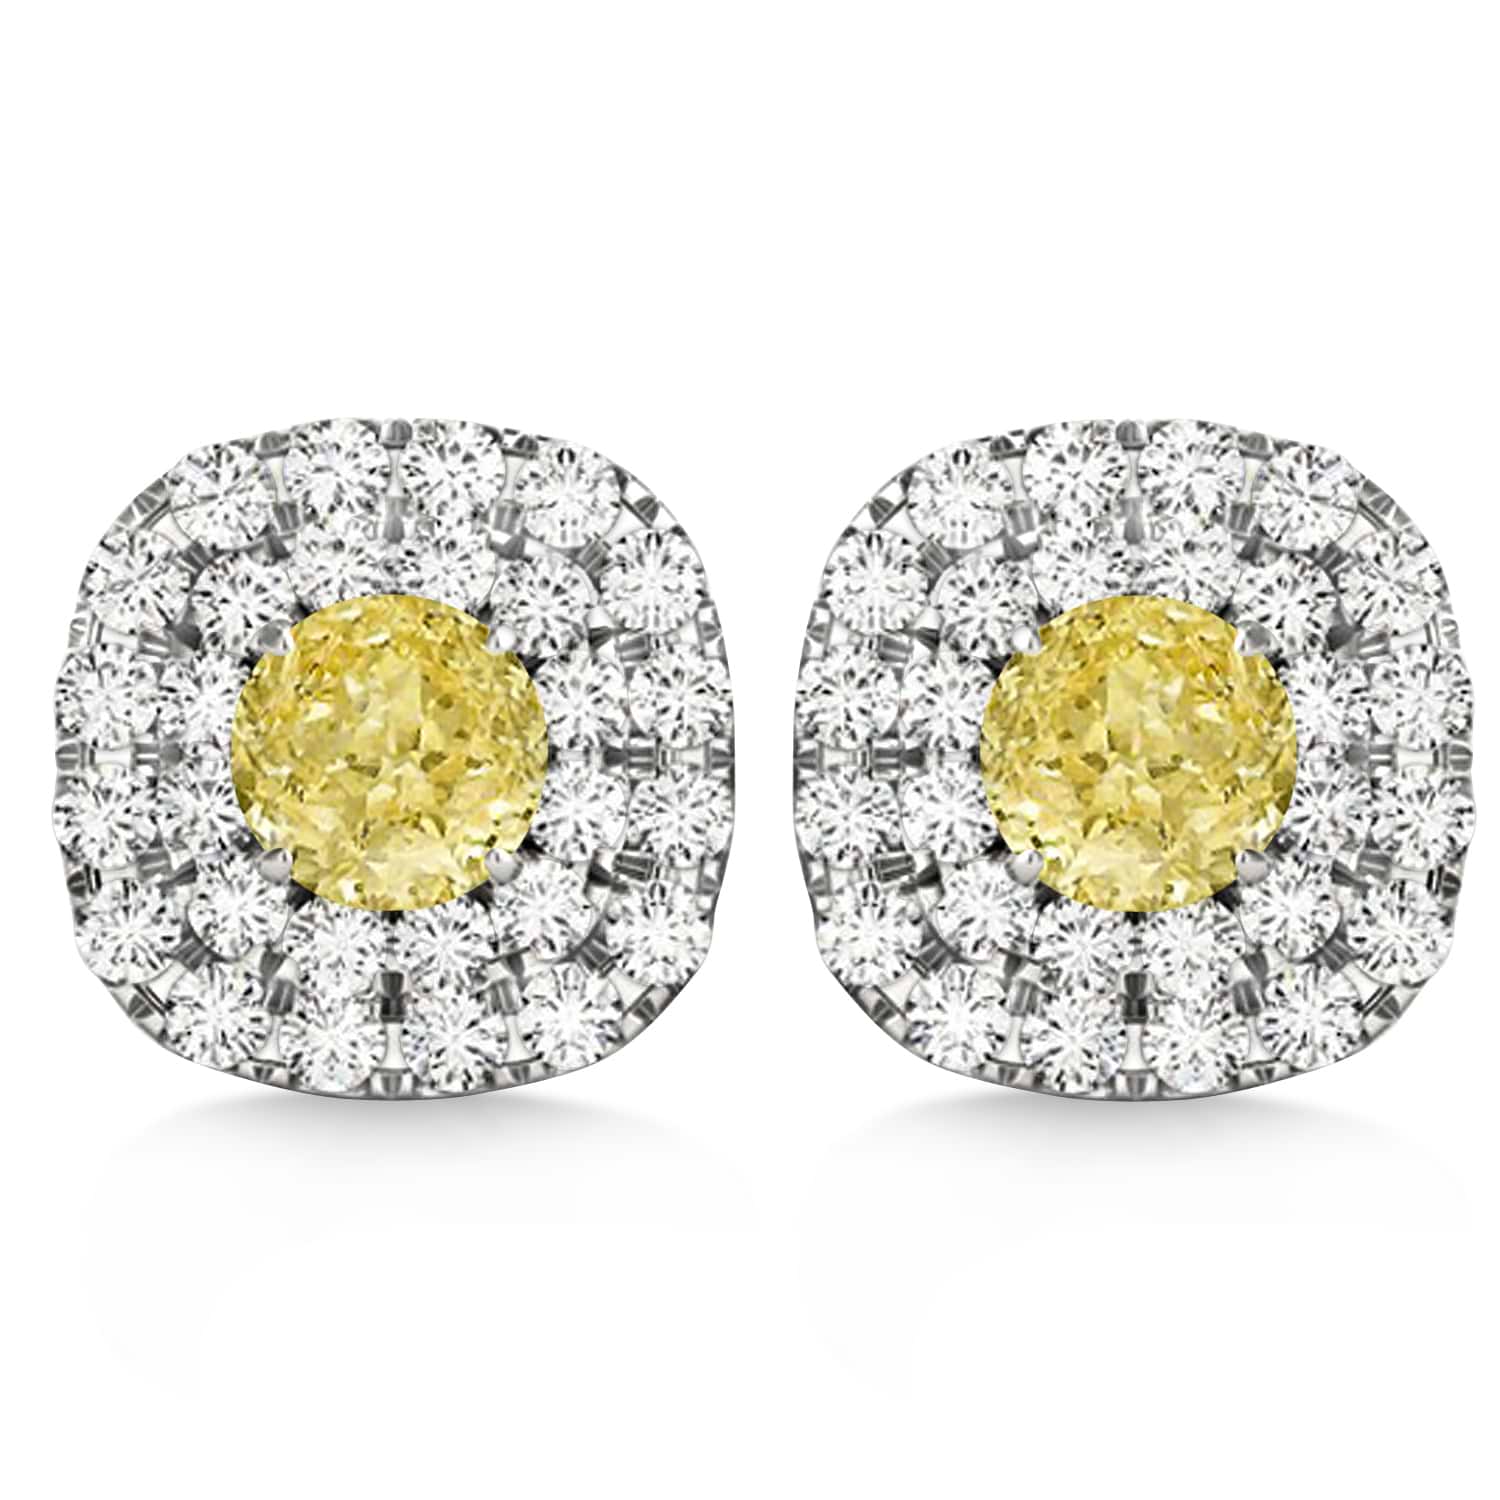 Double Halo Yellow & White Diamond Earrings 14k White Gold (1.36ct)